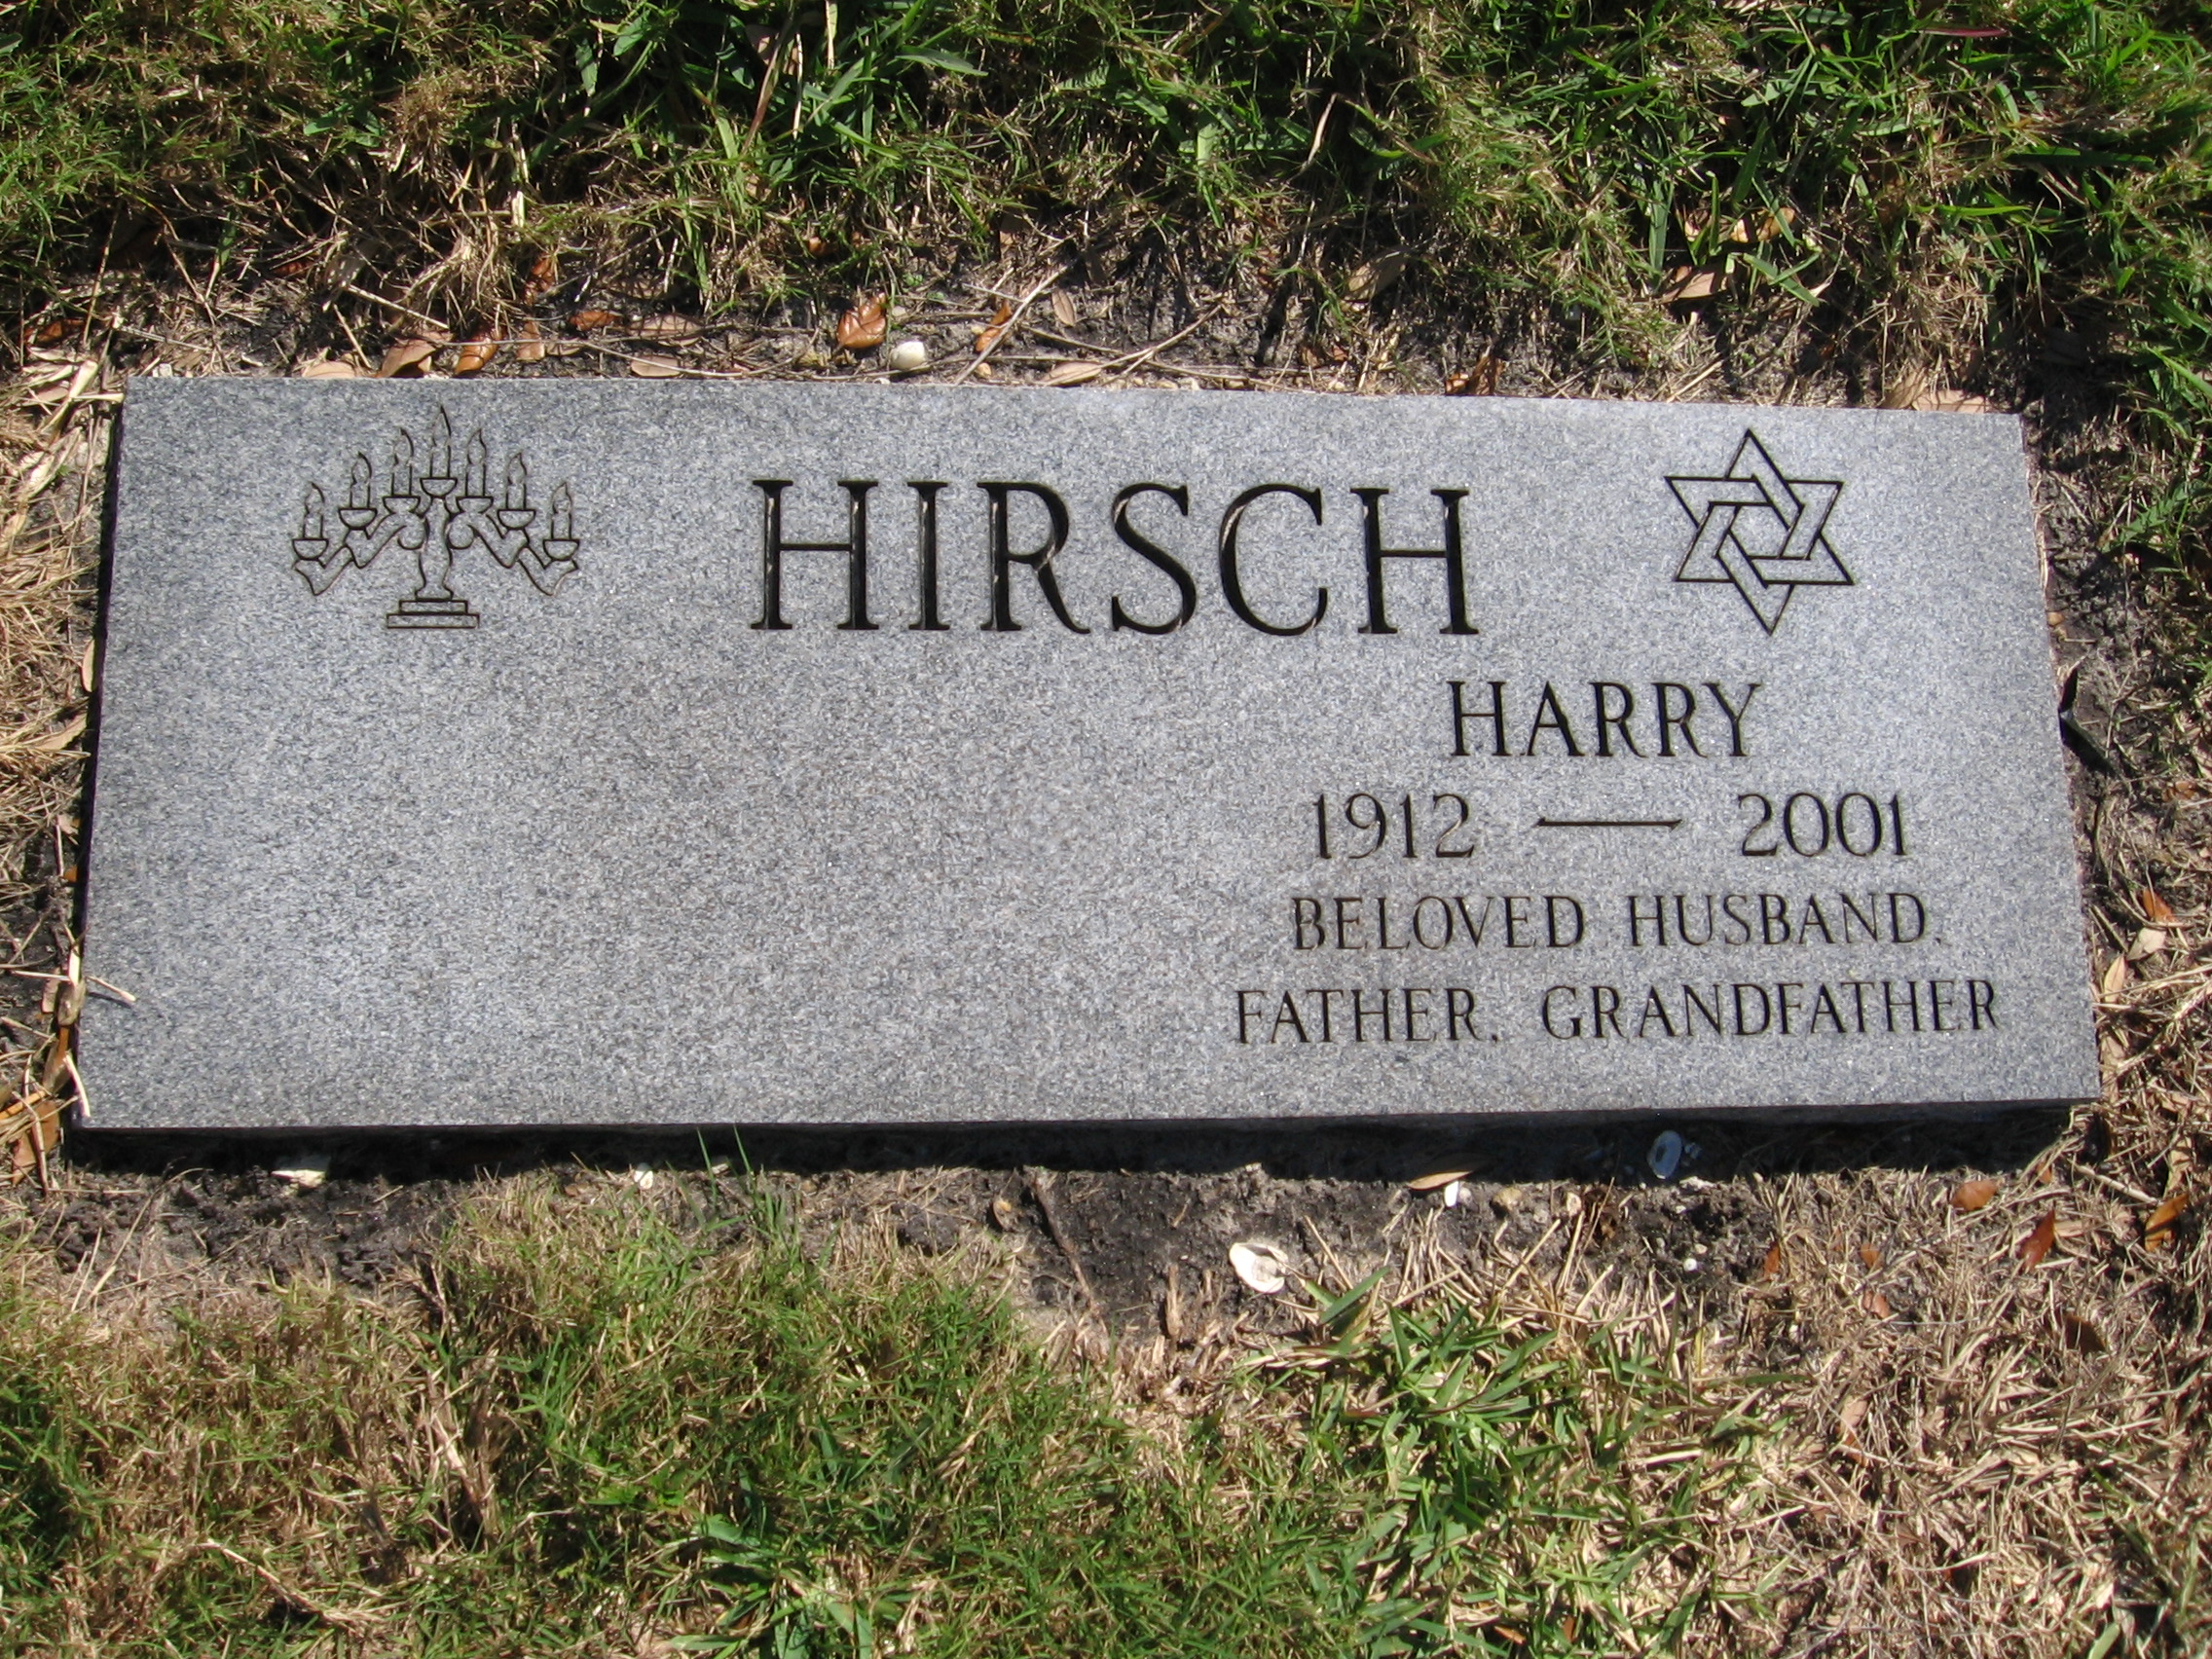 Harry Hirsch